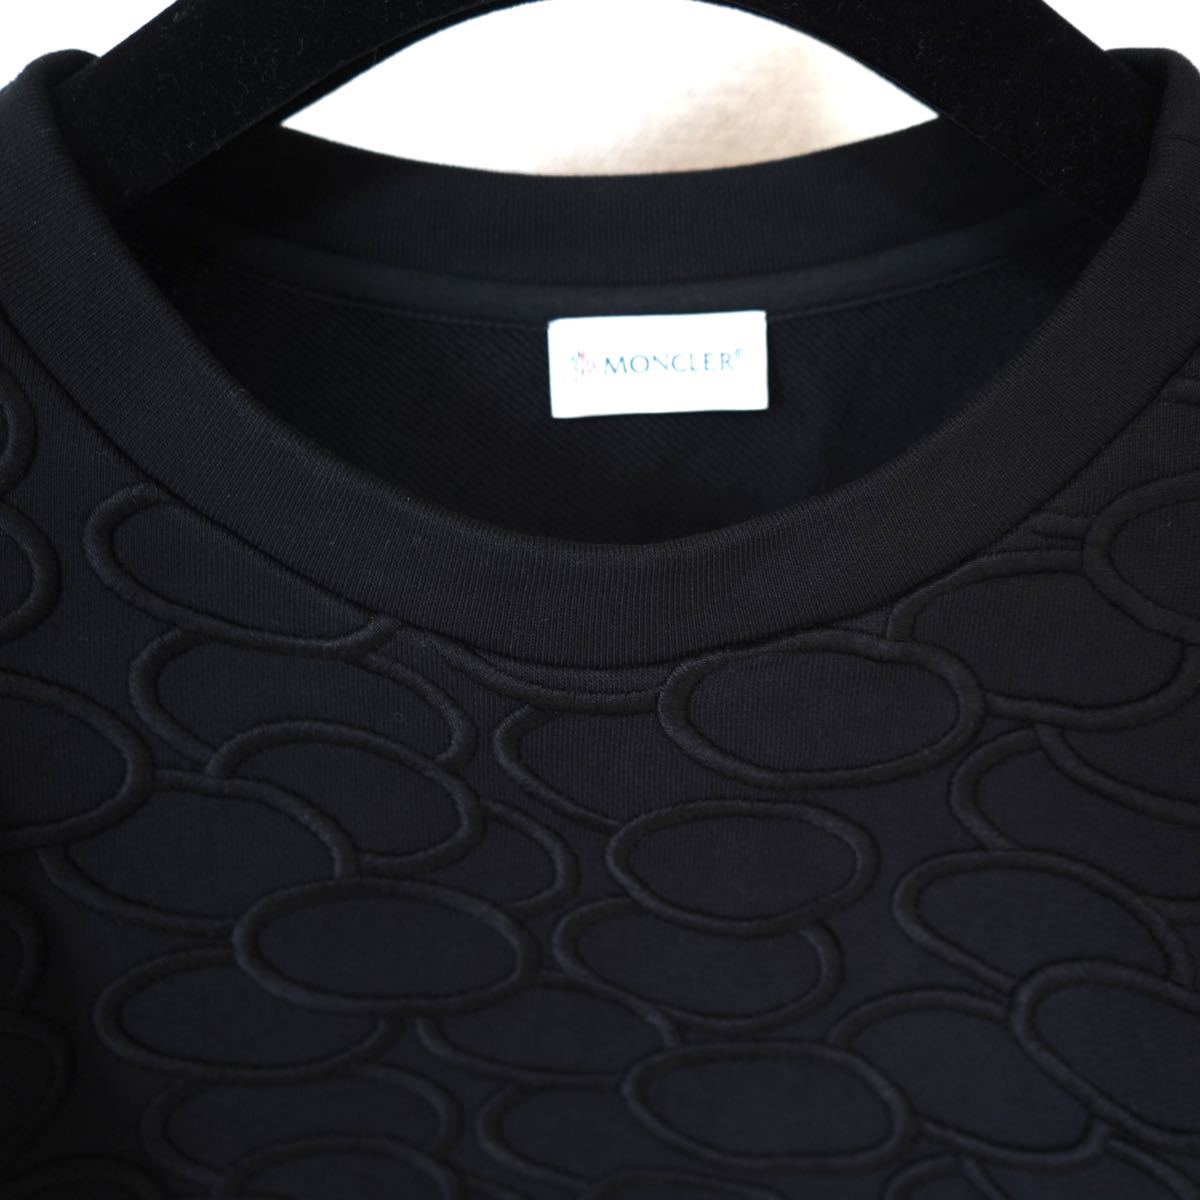 MONCLER】モンクレール スウェット トレーナー ブラック ユニセックス SWEAT 刺繍